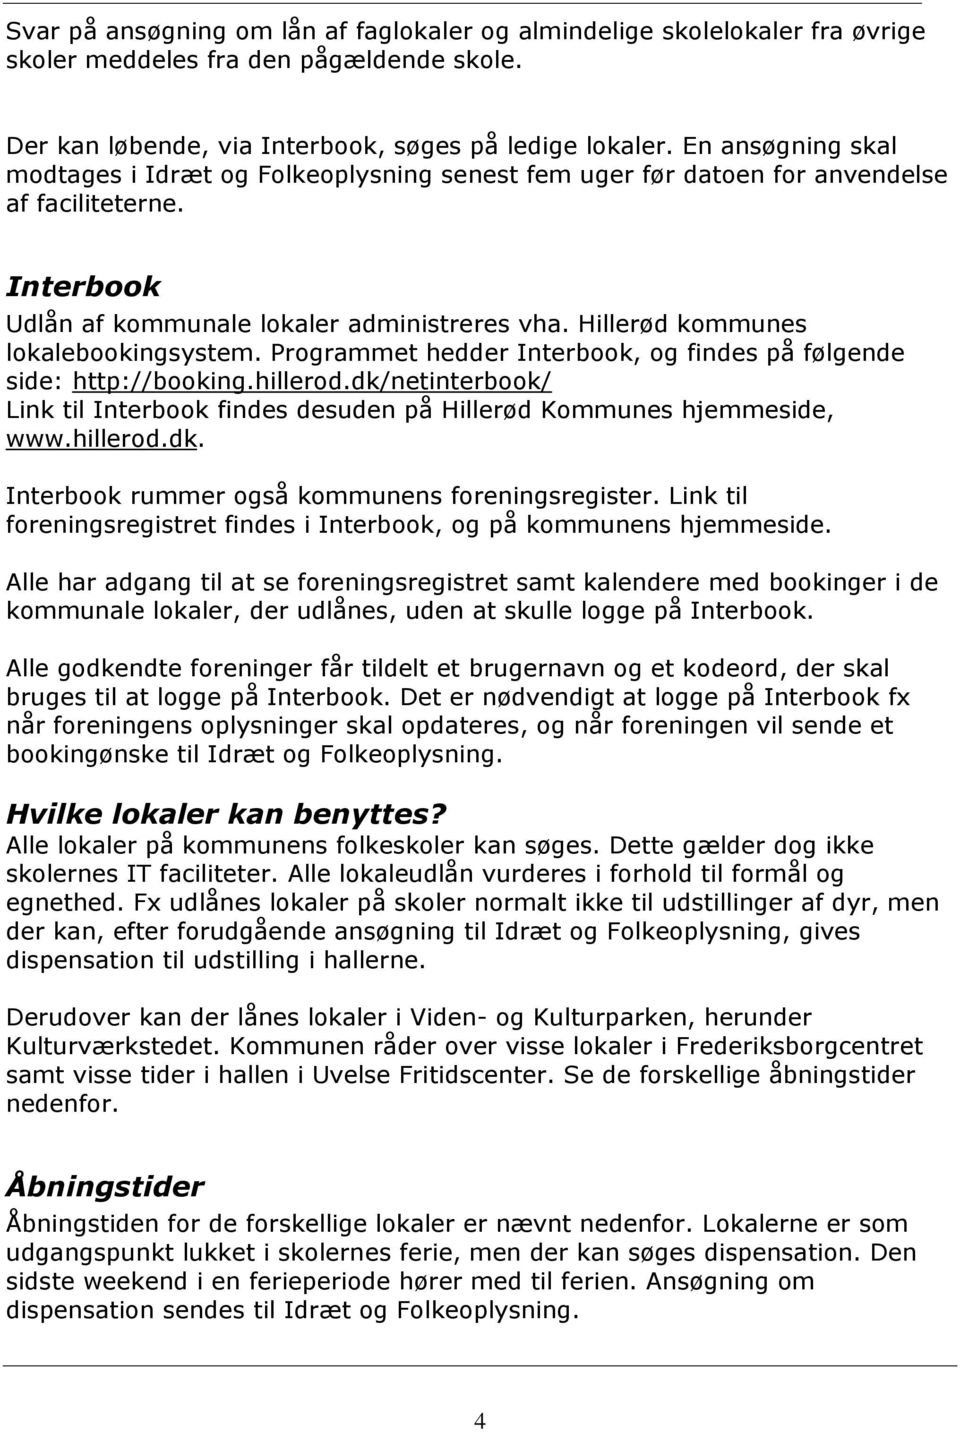 Hillerød kommunes lokalebookingsystem. Programmet hedder Interbook, og findes på følgende side: http://booking.hillerod.